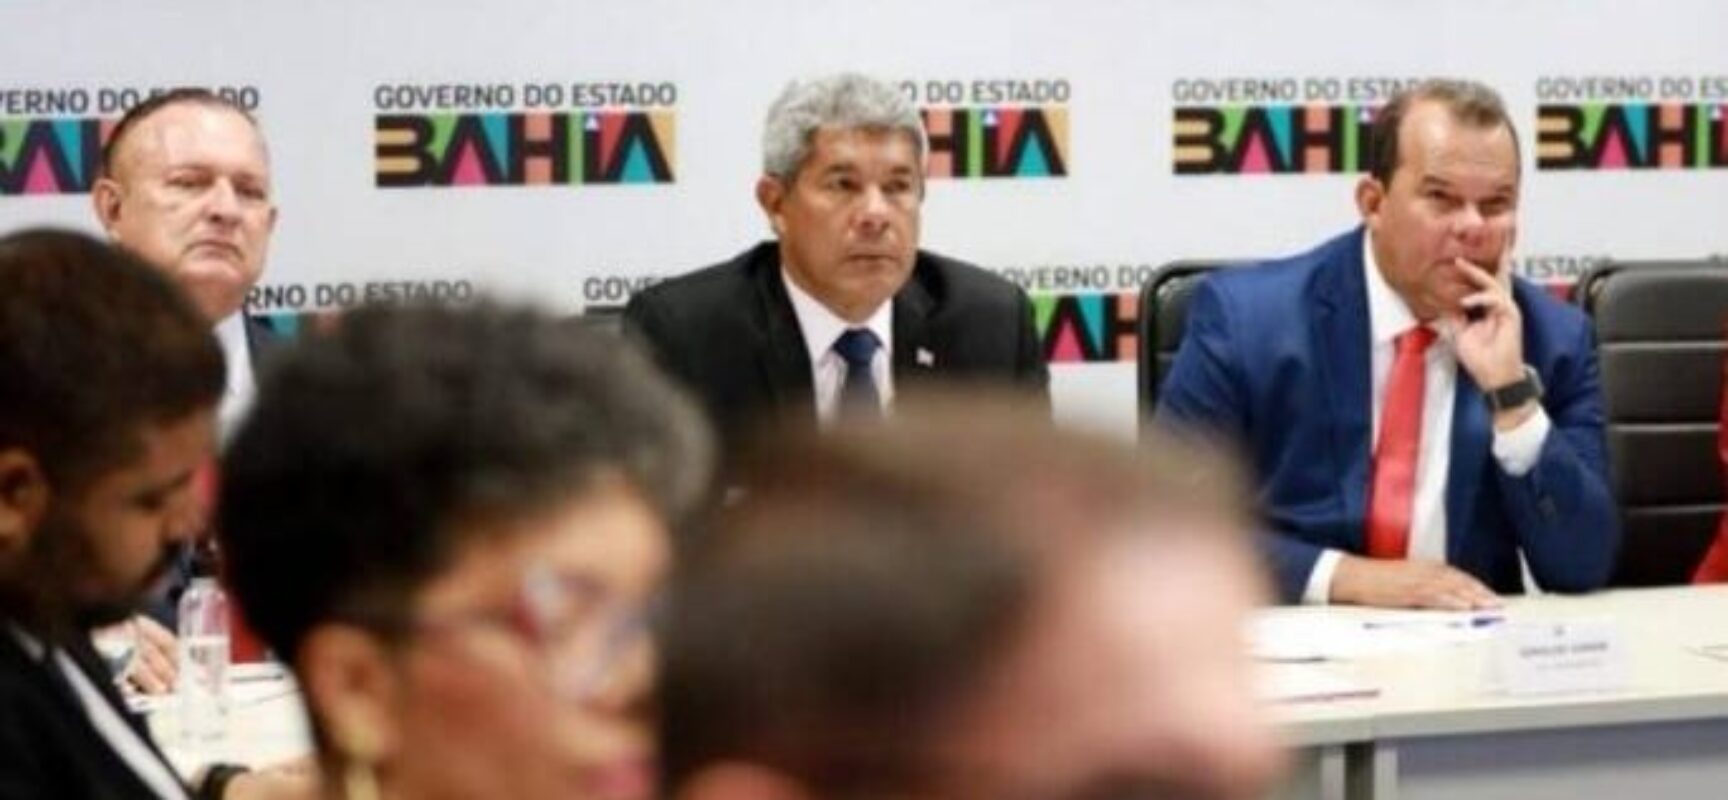 Governo reúne poderes estaduais e instituições para implantação do Bahia Pela Paz